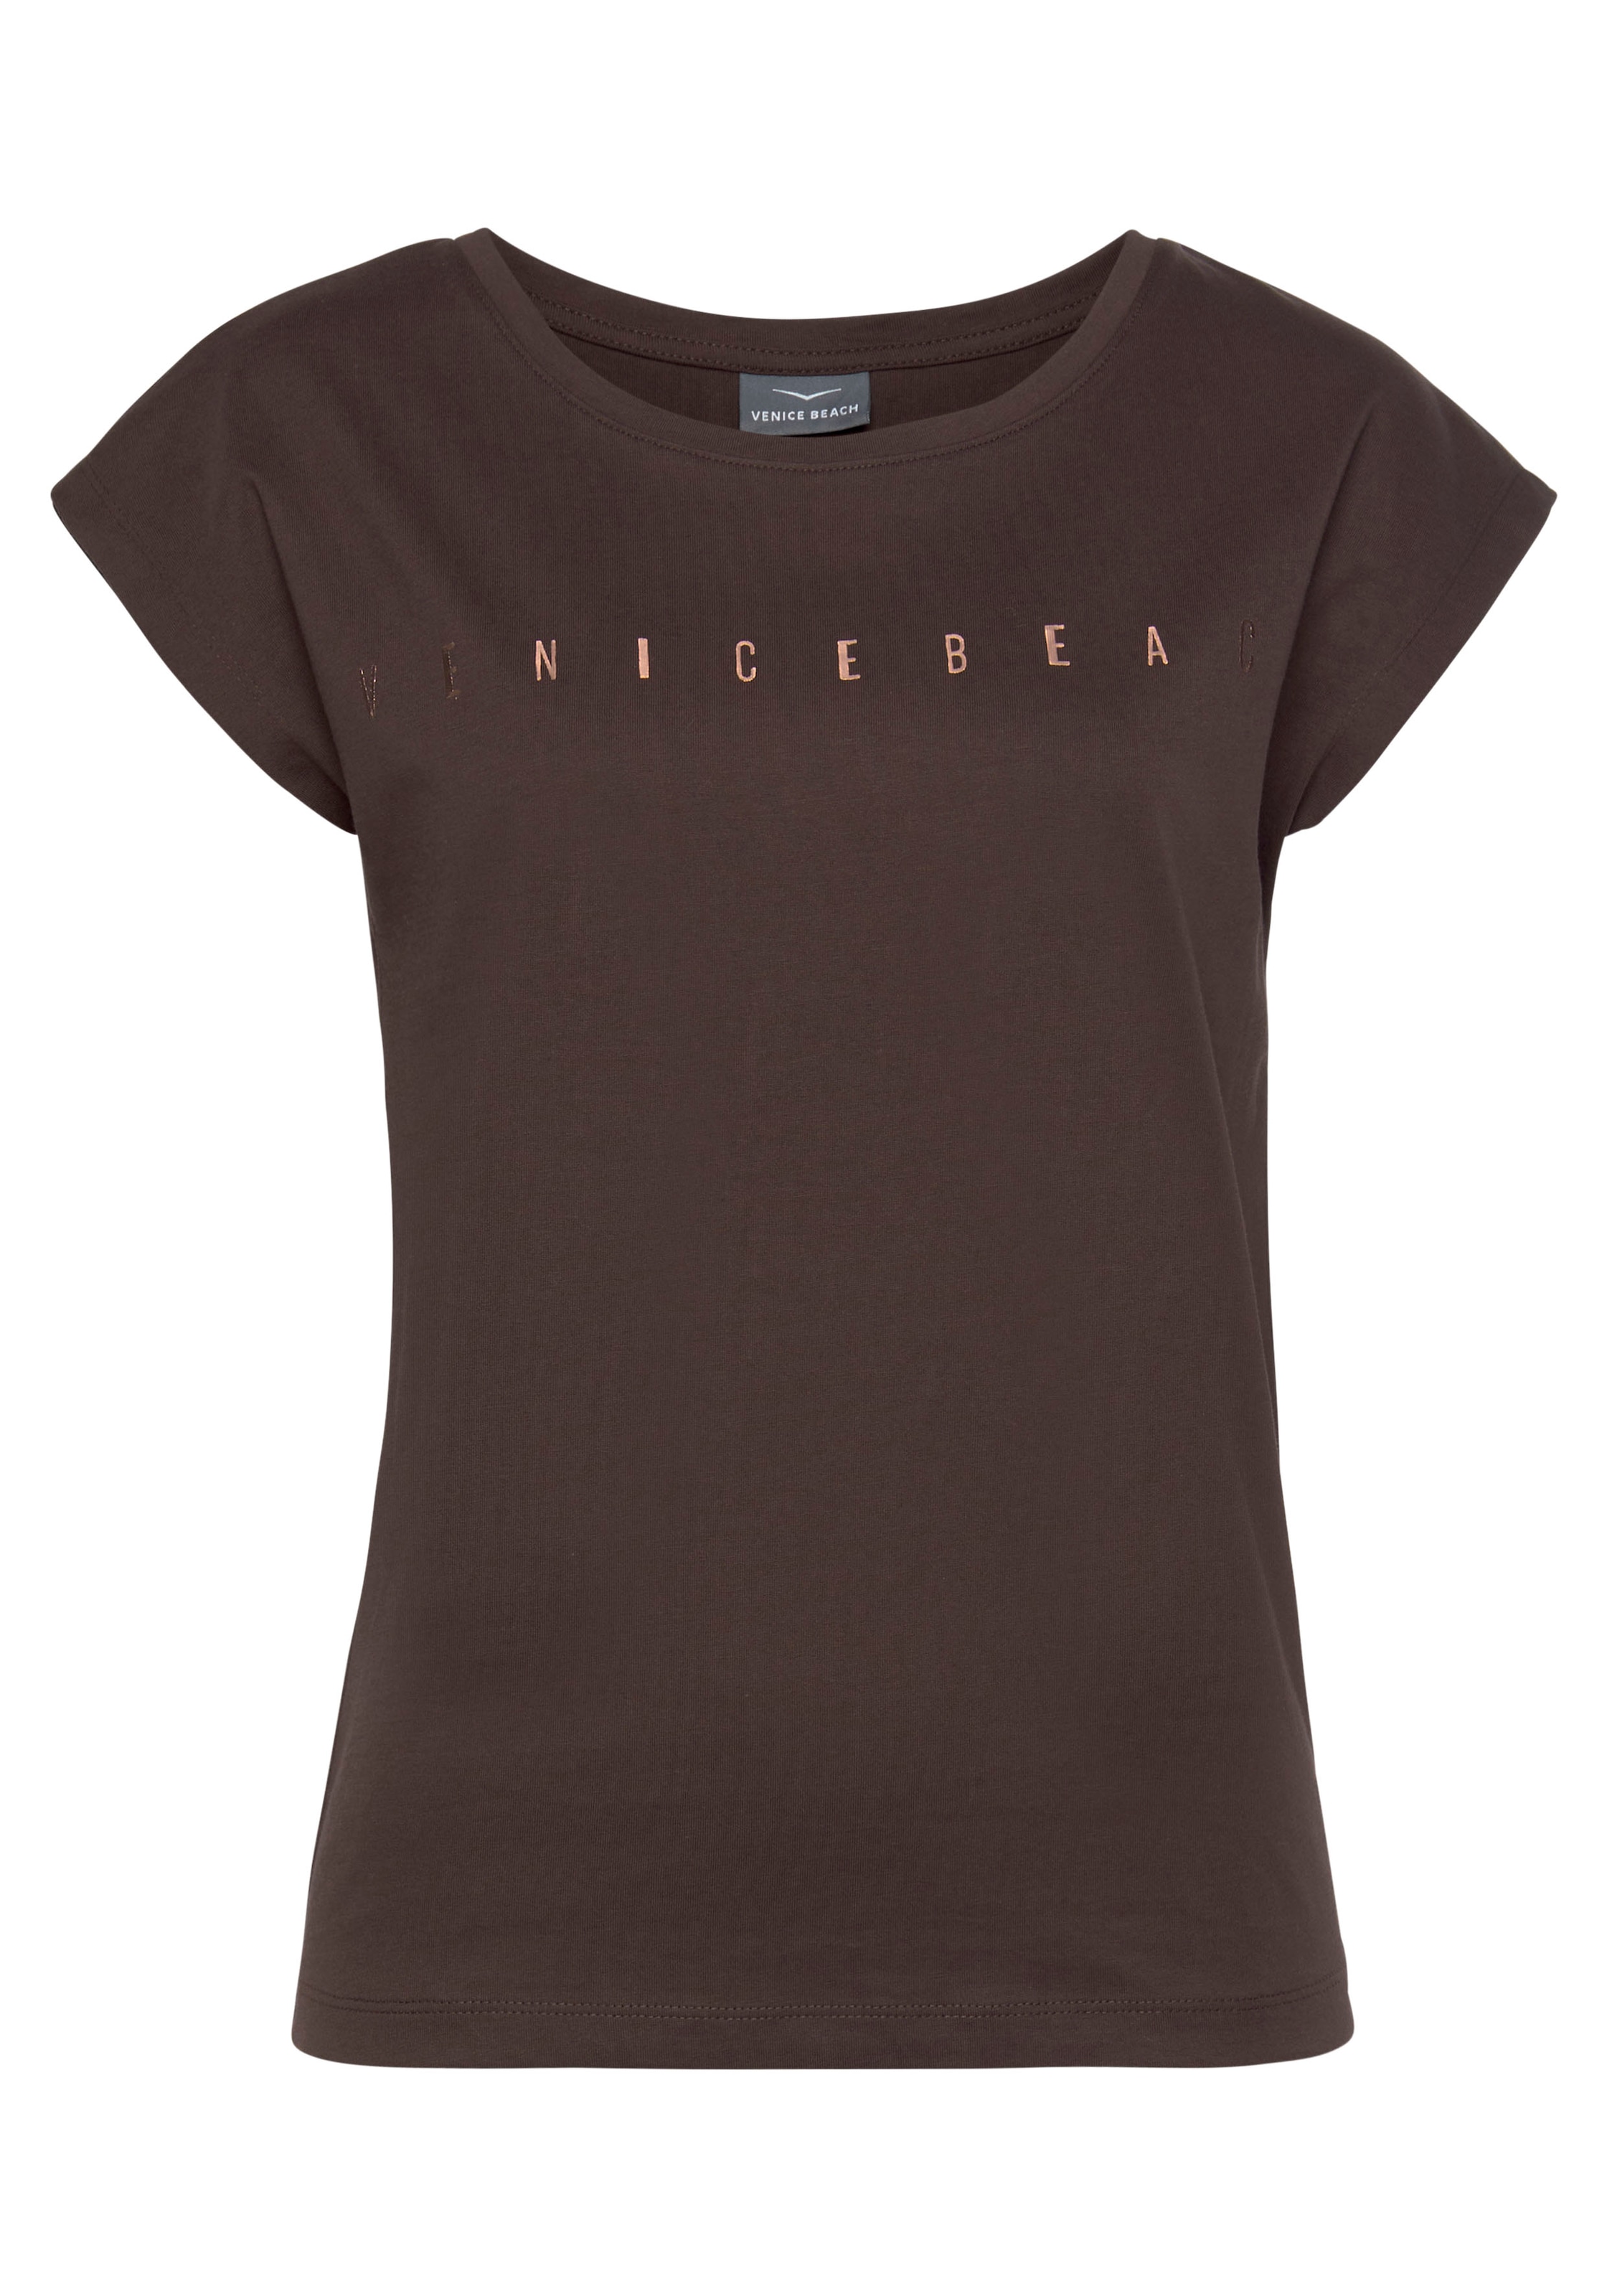 Venice Logodruck, Beach aus glänzendem mit Baumwolle kaufen T-Shirt Kurzarmshirt,